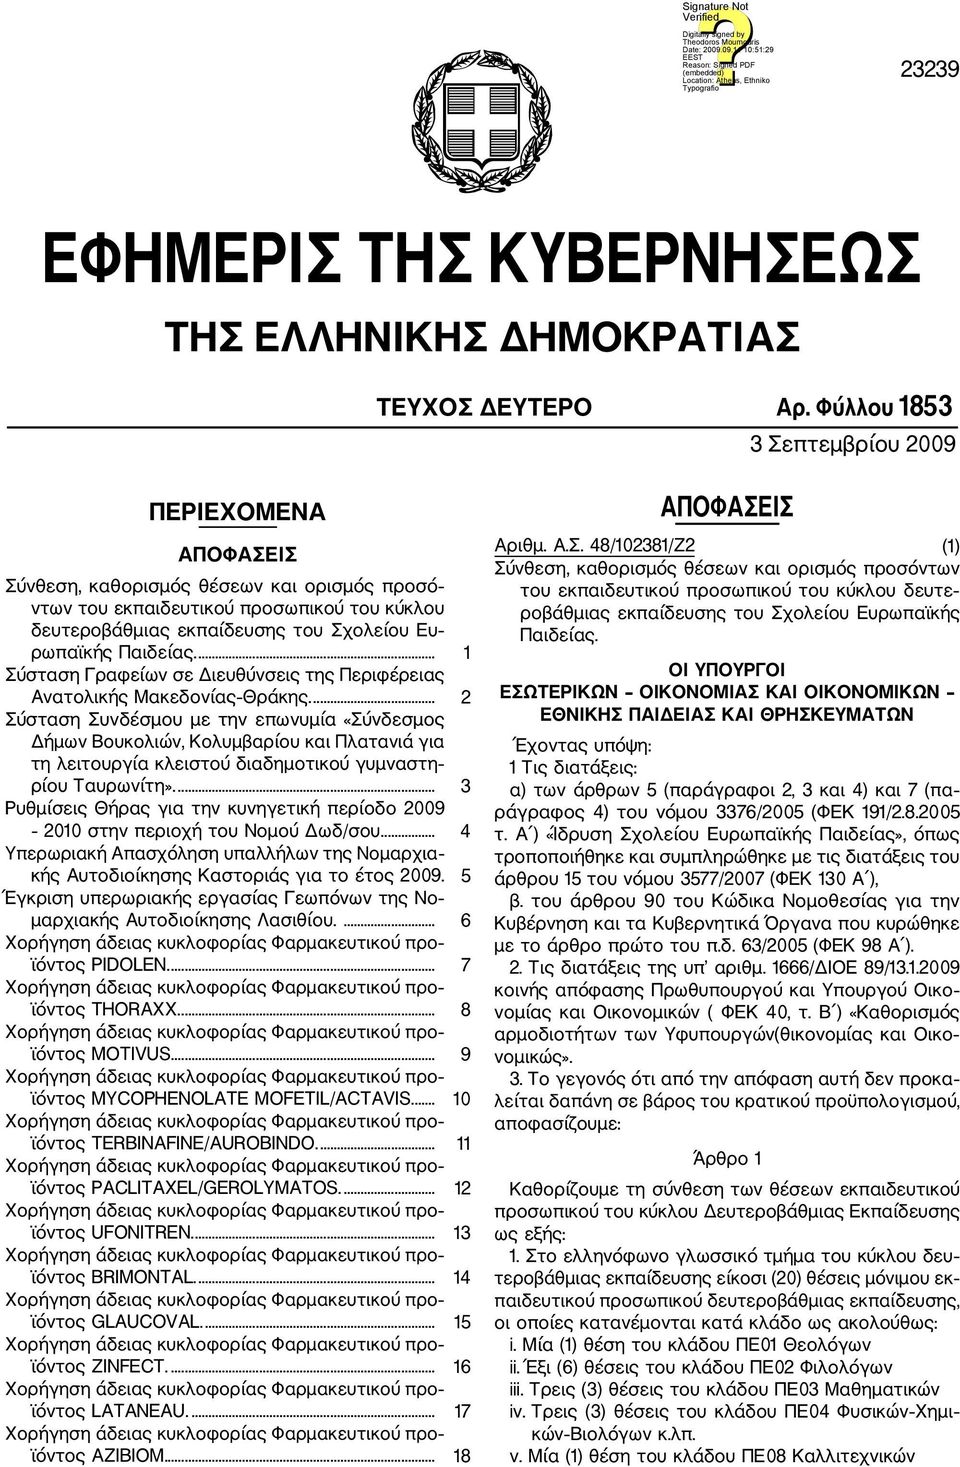 Παιδείας.... 1 Σύσταση Γραφείων σε Διευθύνσεις της Περιφέρειας Ανατολικής Μακεδονίας Θράκης.